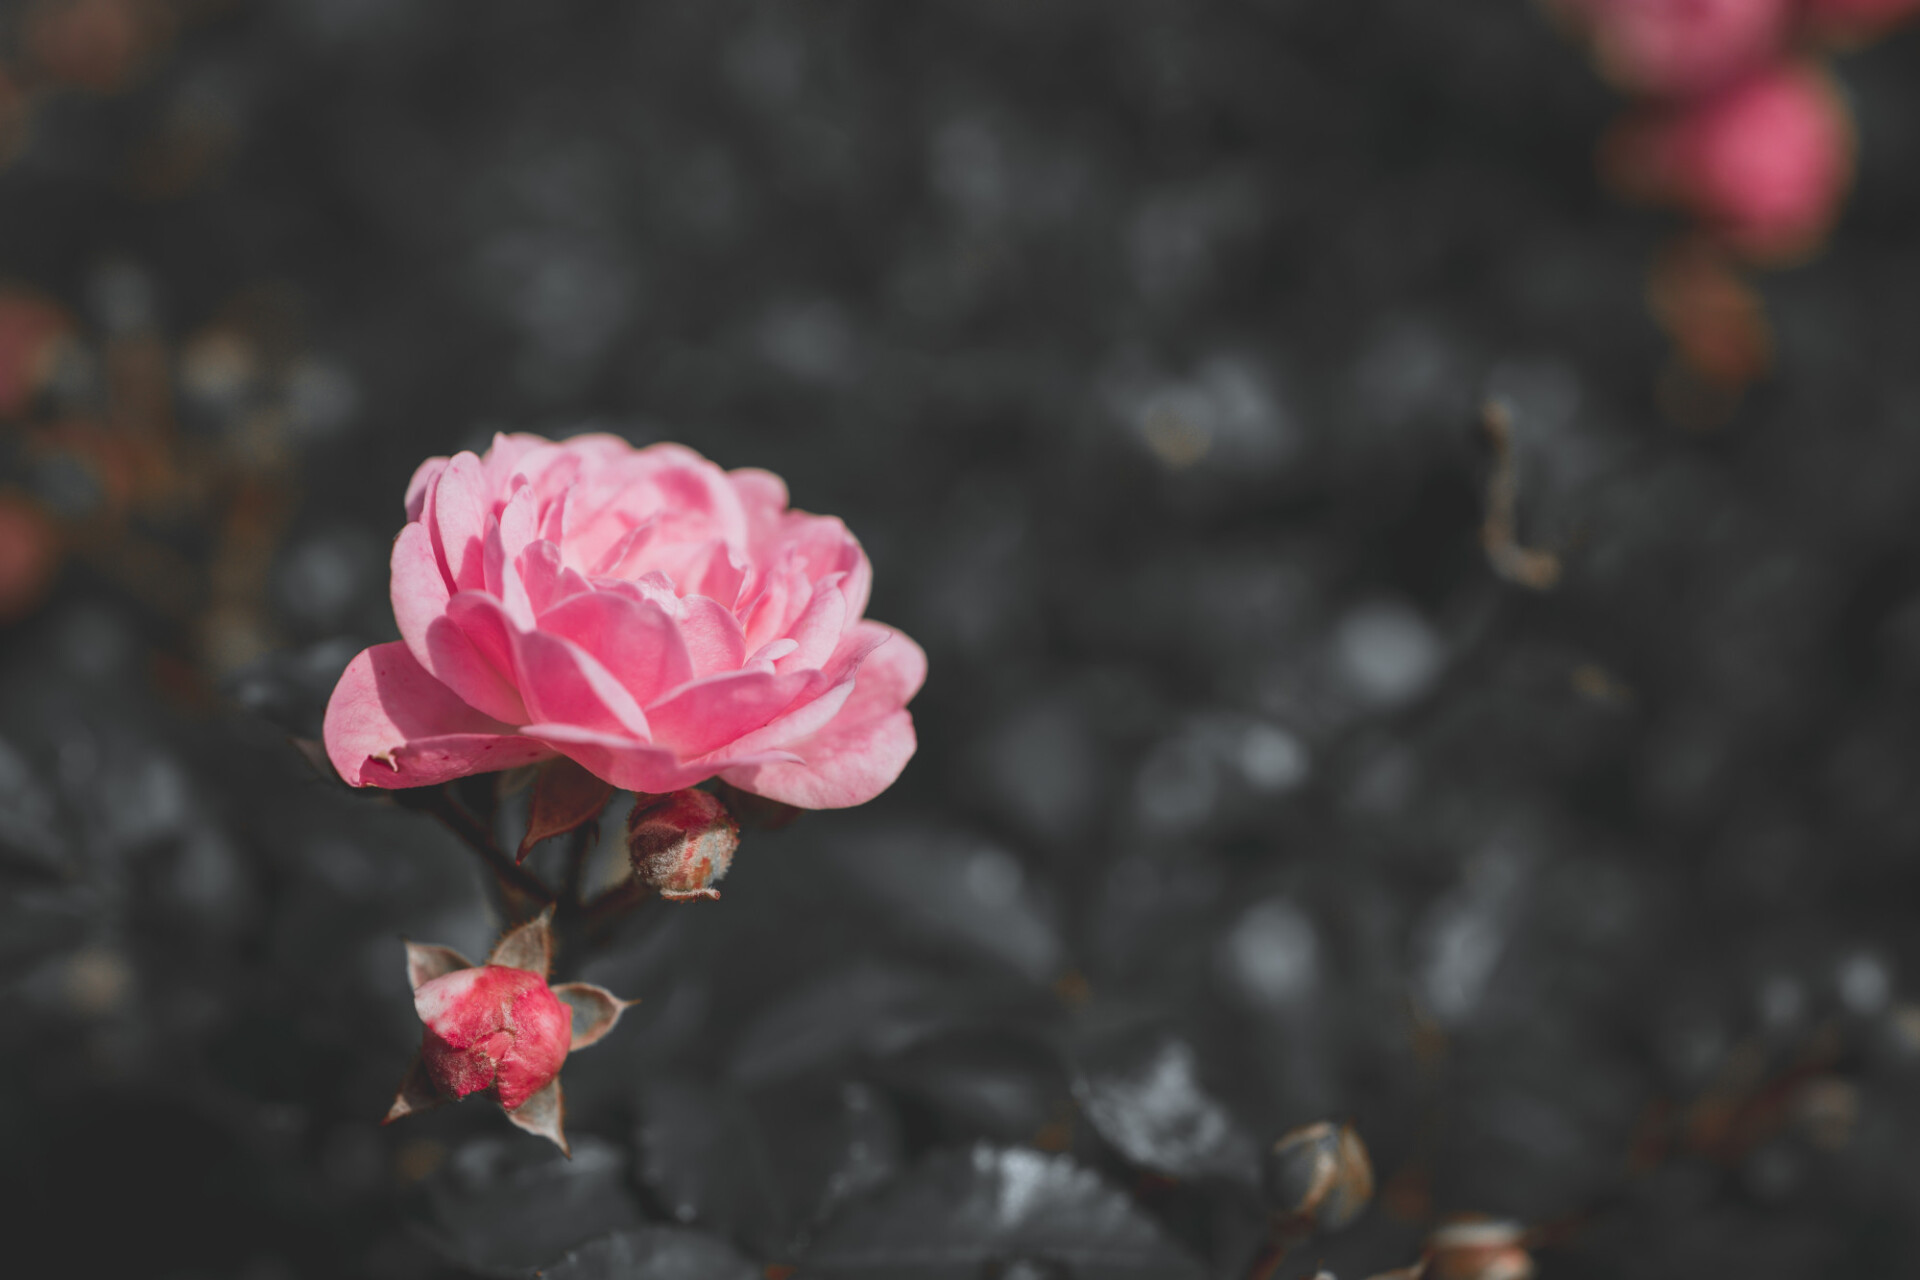 Focus on pink rose